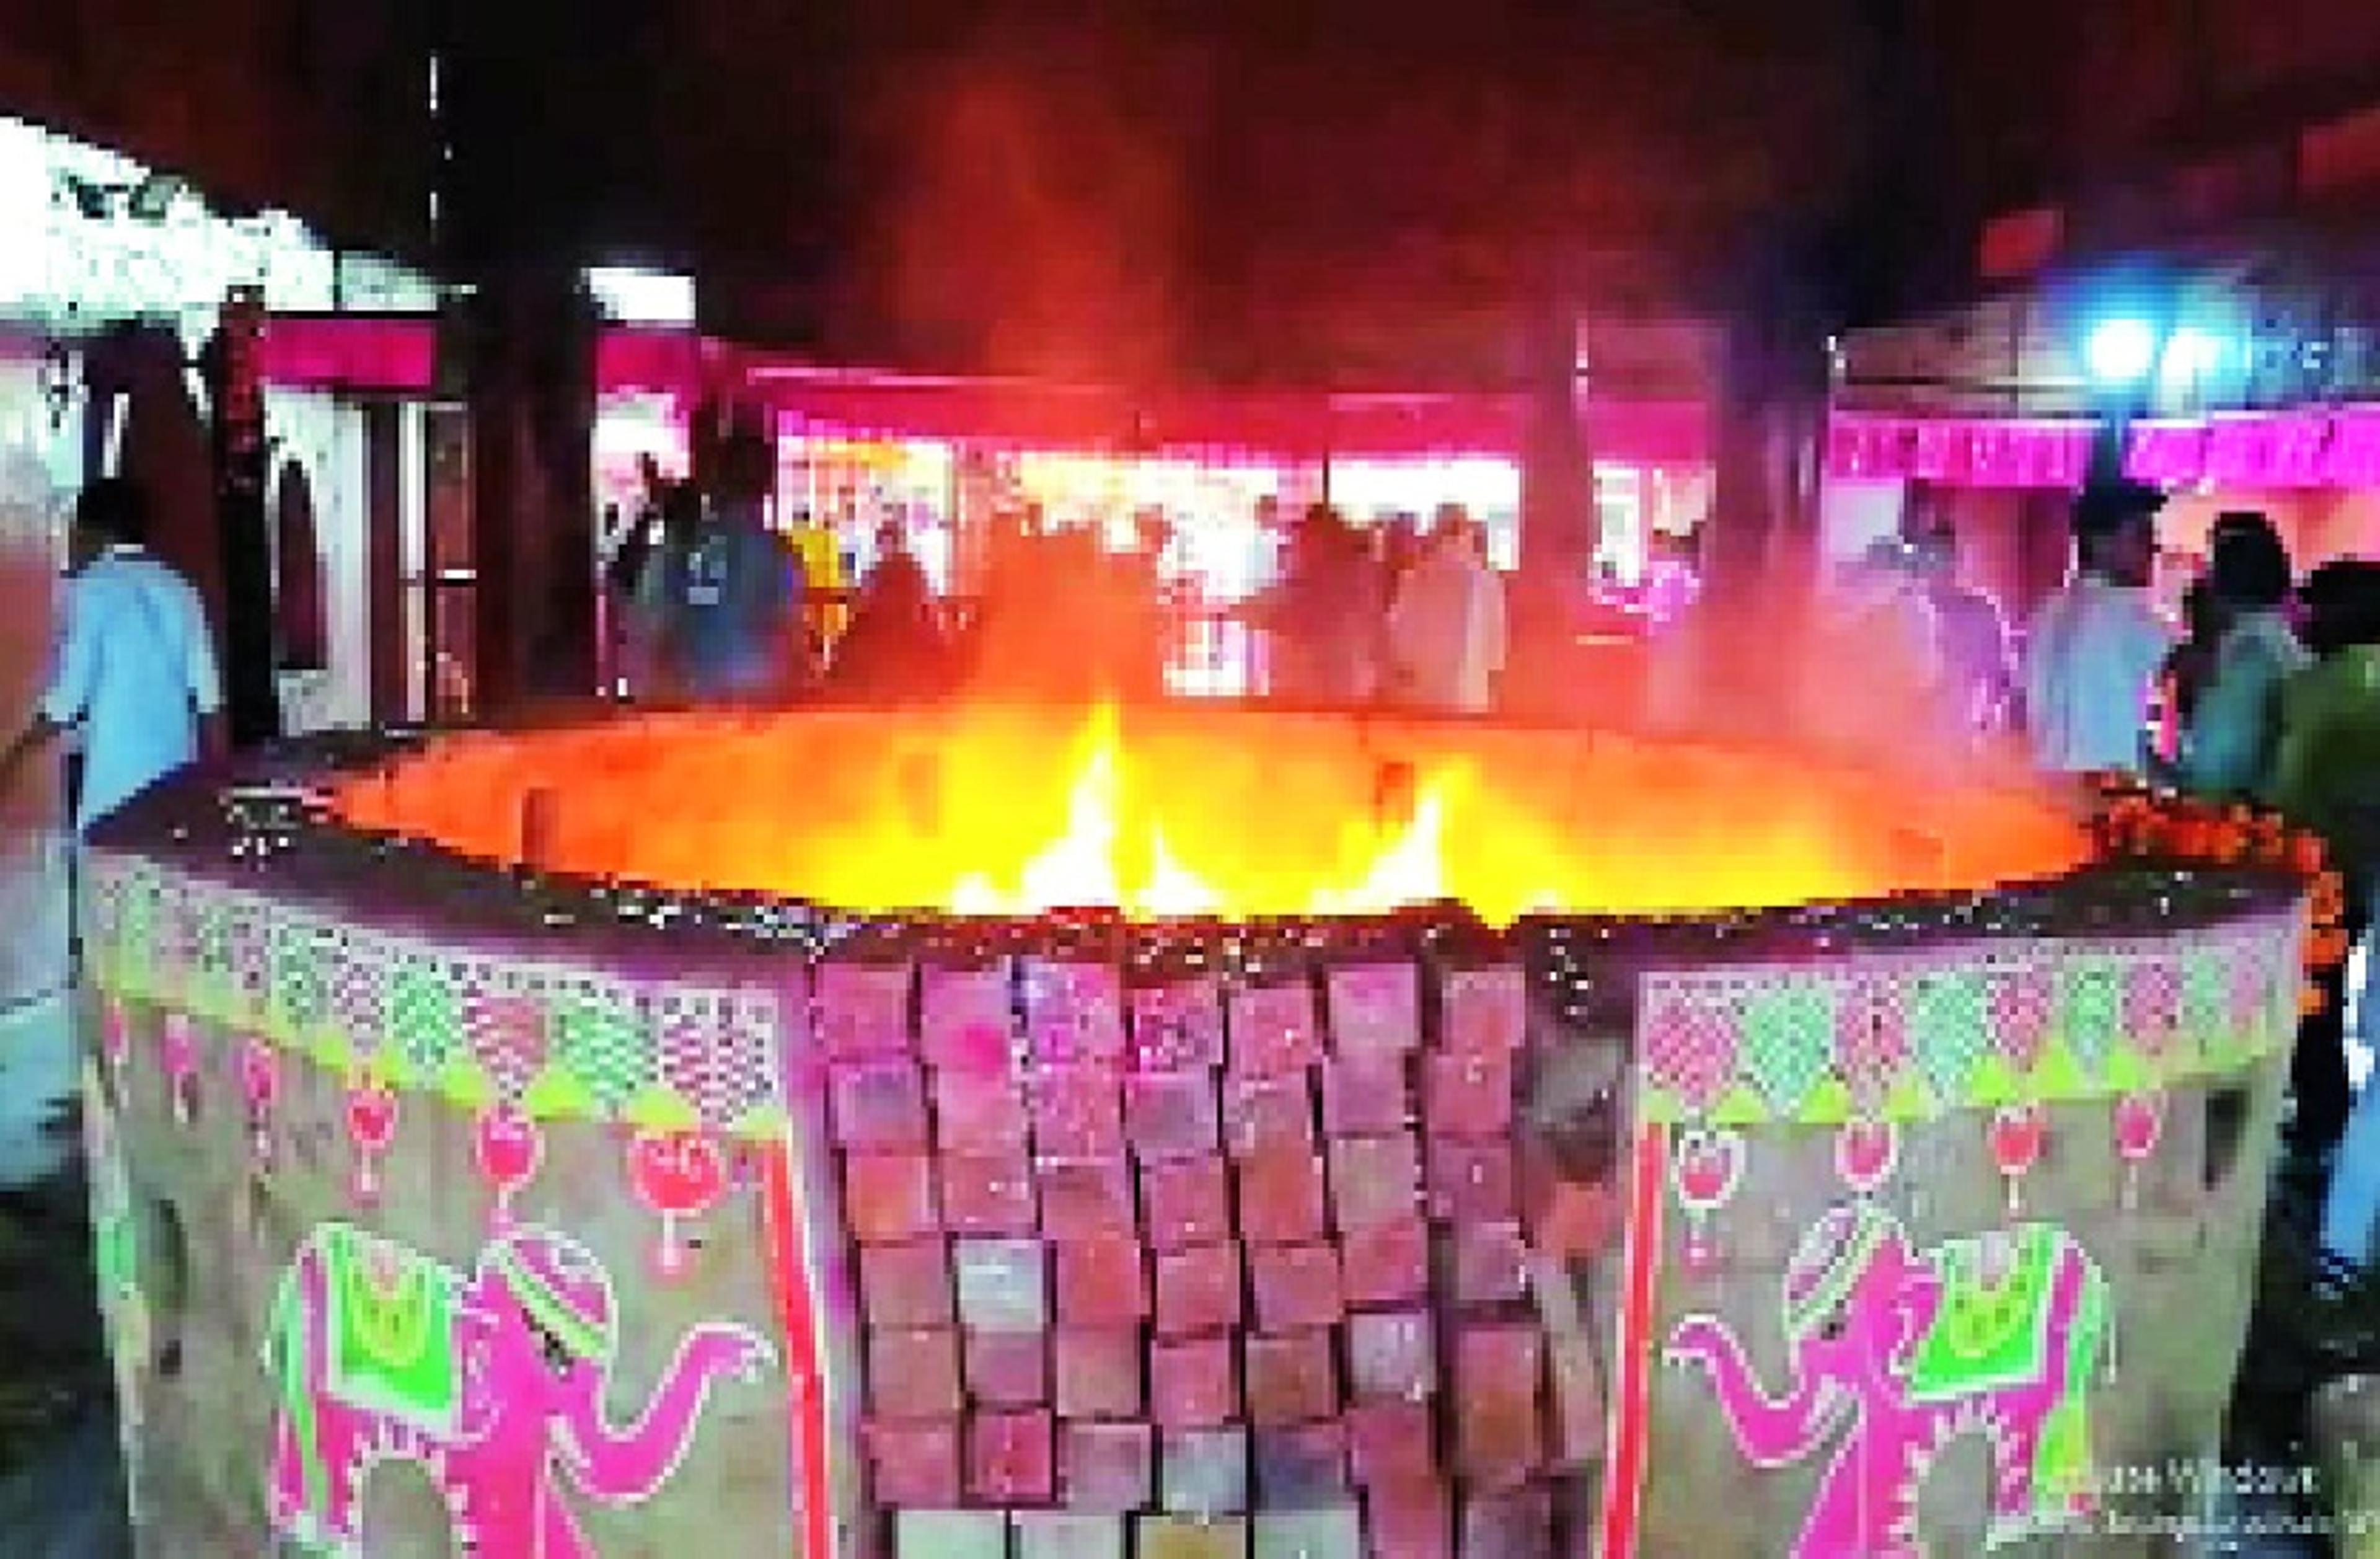 Dhuniwale Dadaji : श्रद्धालुओं की आस्था का मुख्य केंद्र, जहां 90 साल से जल रही
है धूनि